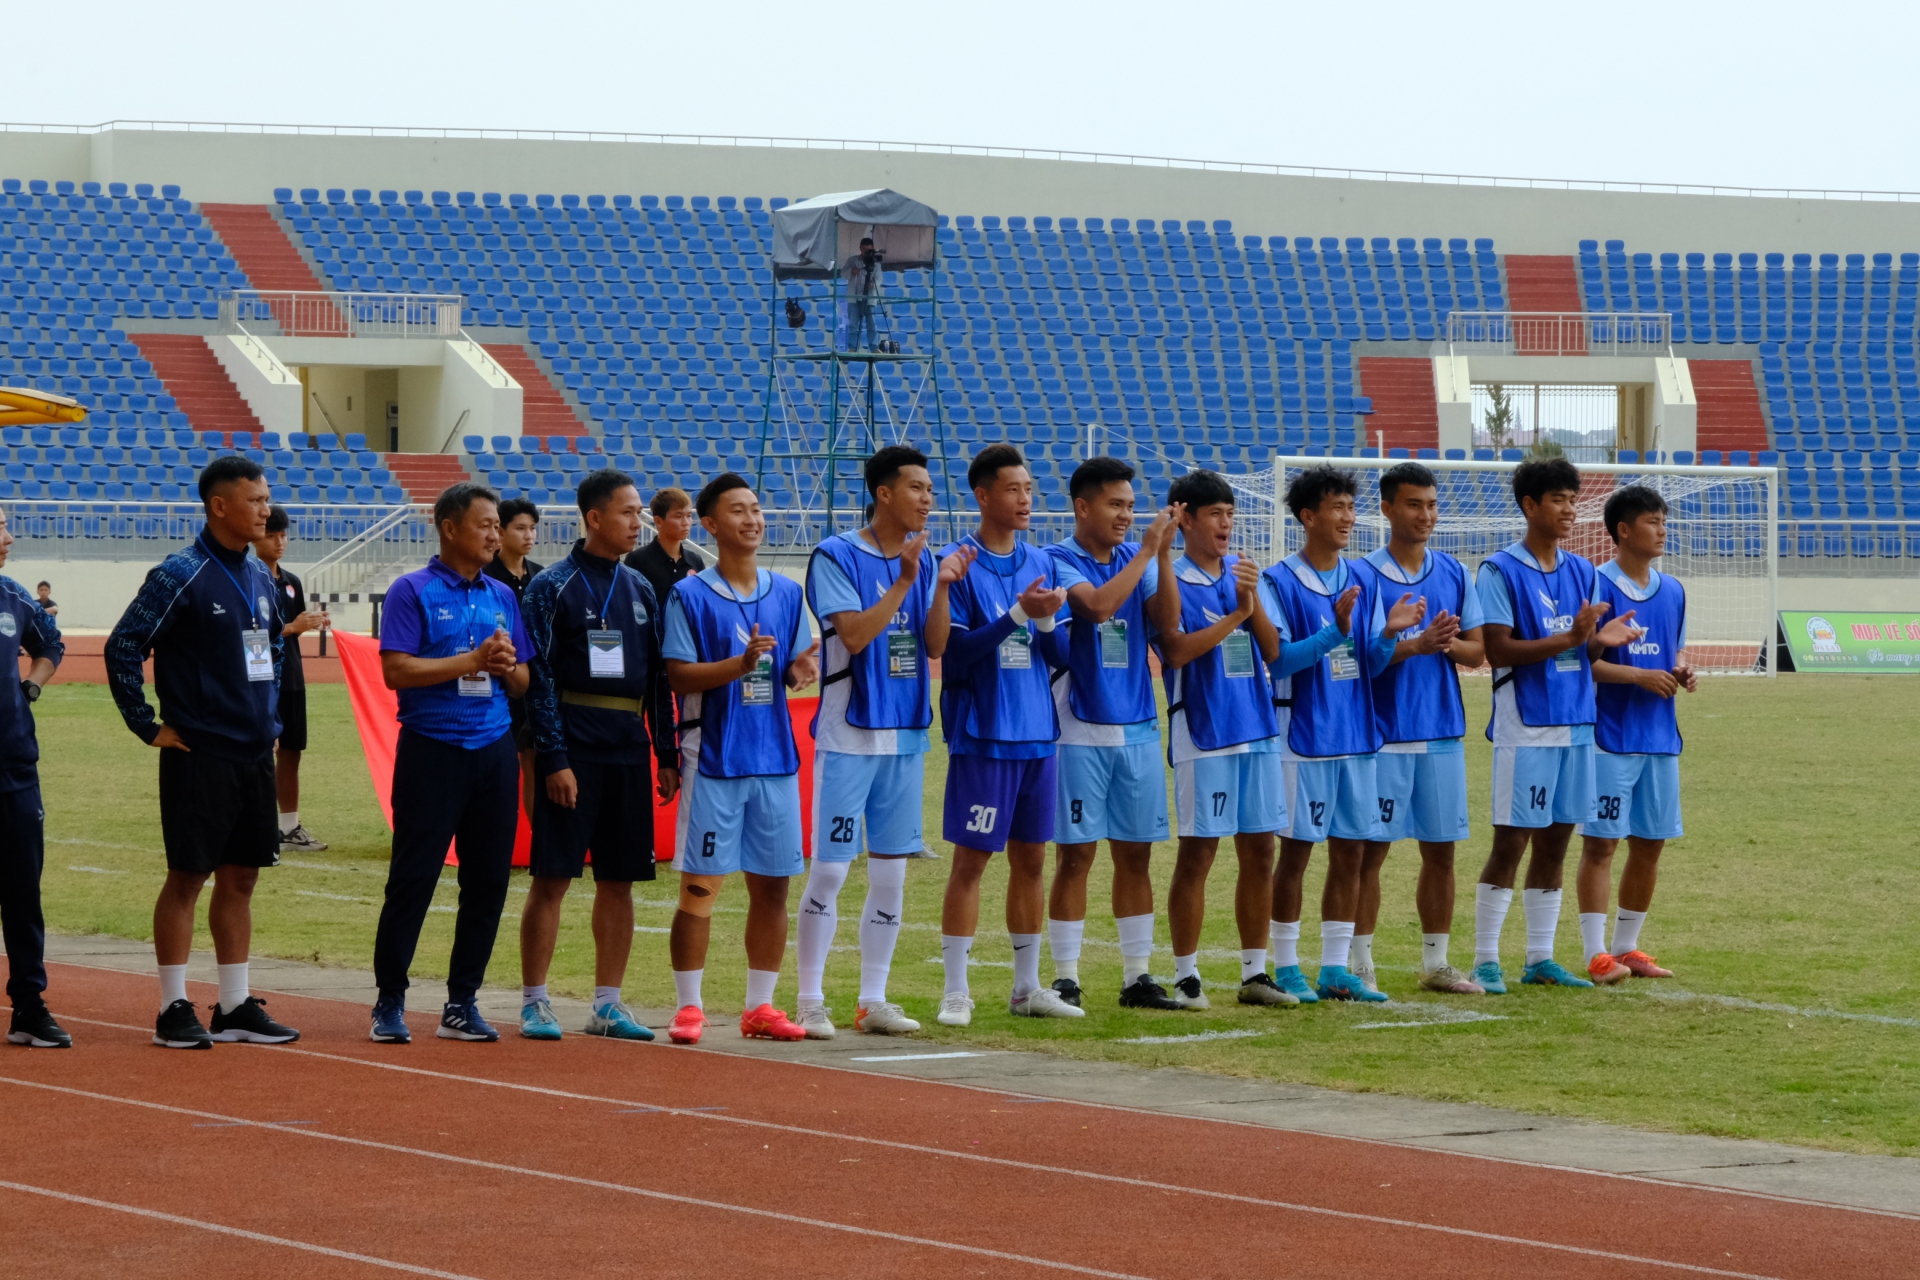 Với việc 70% lực lượng tham gia được đôn lên từ lứa cầu thủ U19, Đội Bóng đá Lâm Đồng là đội tuyển có lực lượng với độ tuổi gần như trẻ nhất giải. 